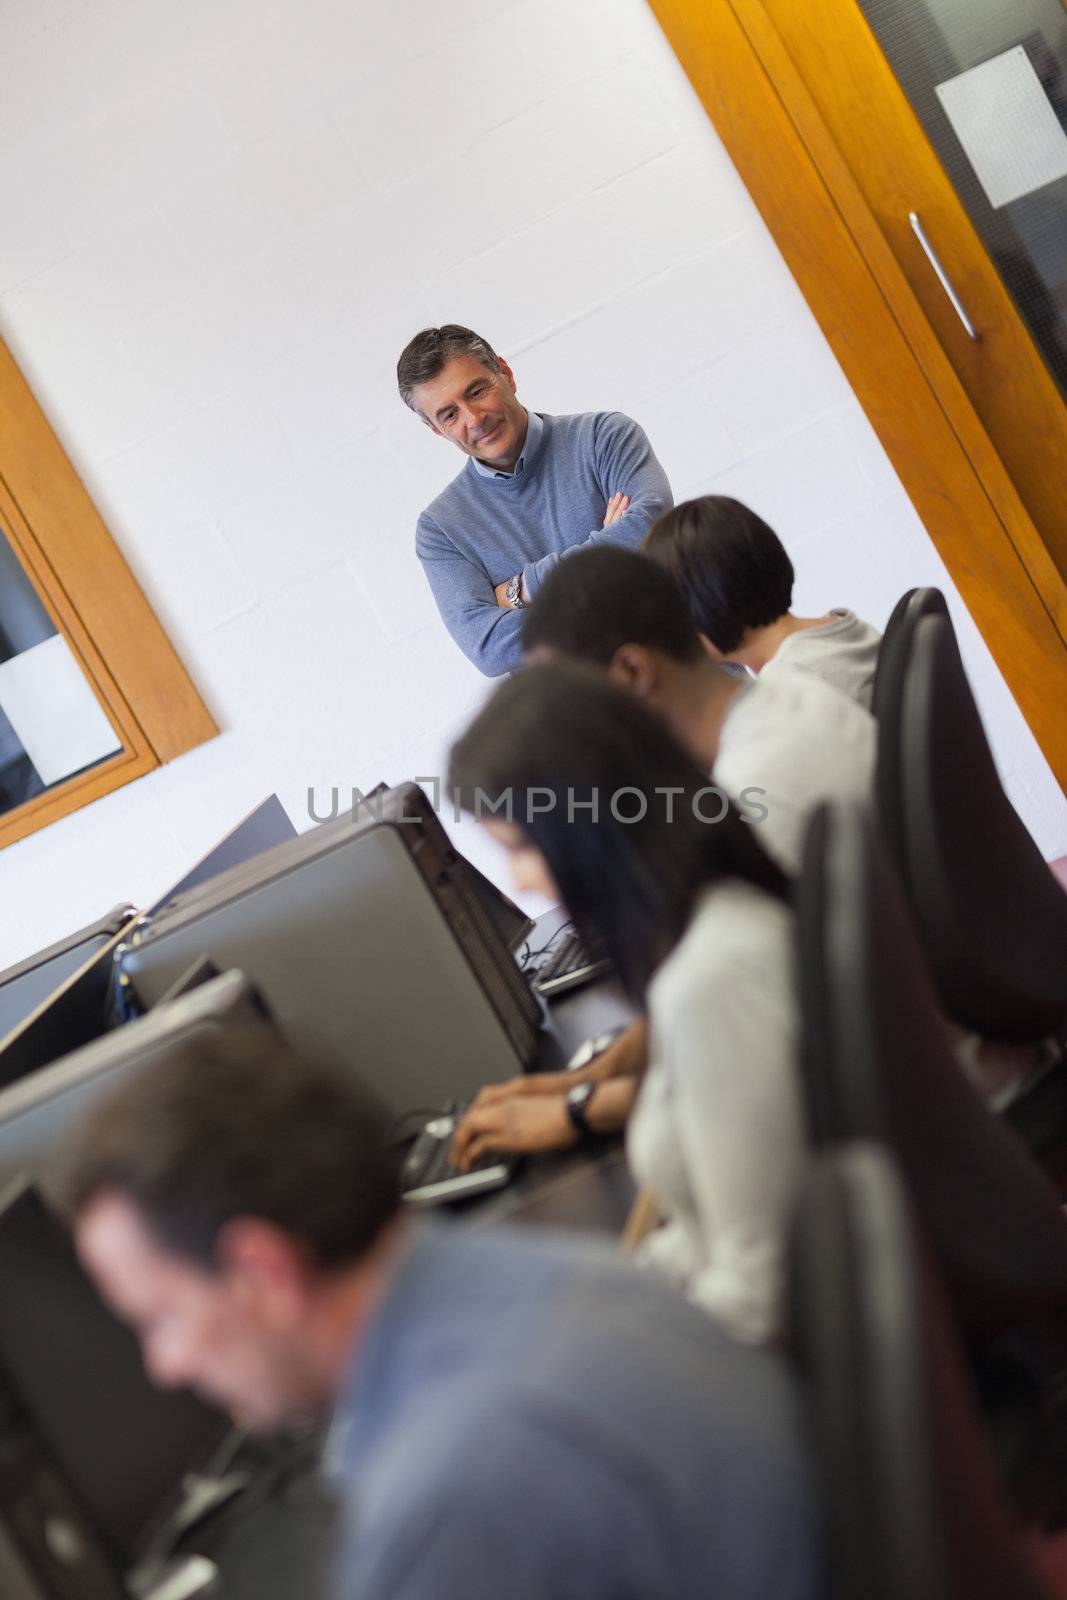 Teacher overlooking students working in computer class